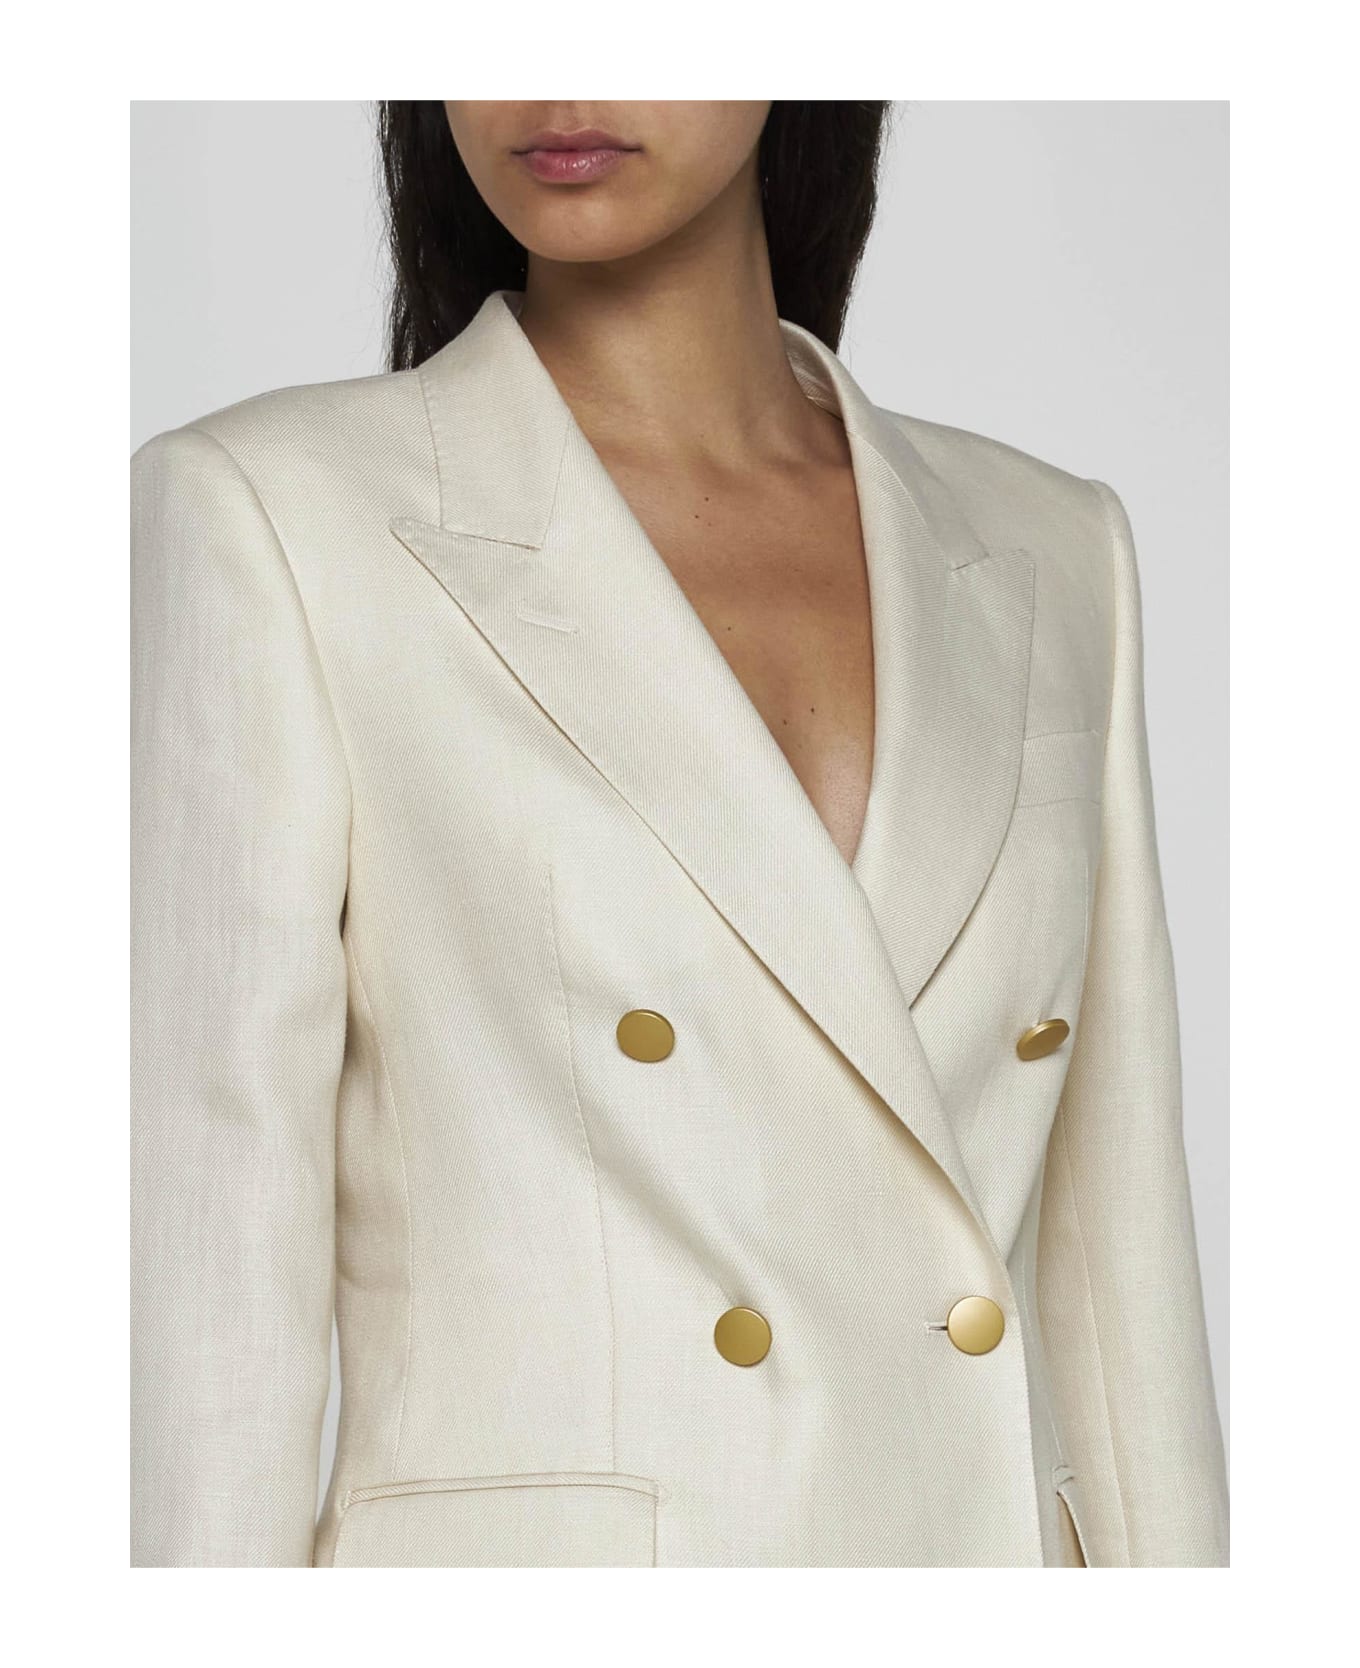 Tagliatore Parigi Linen Suit - Beige スーツ